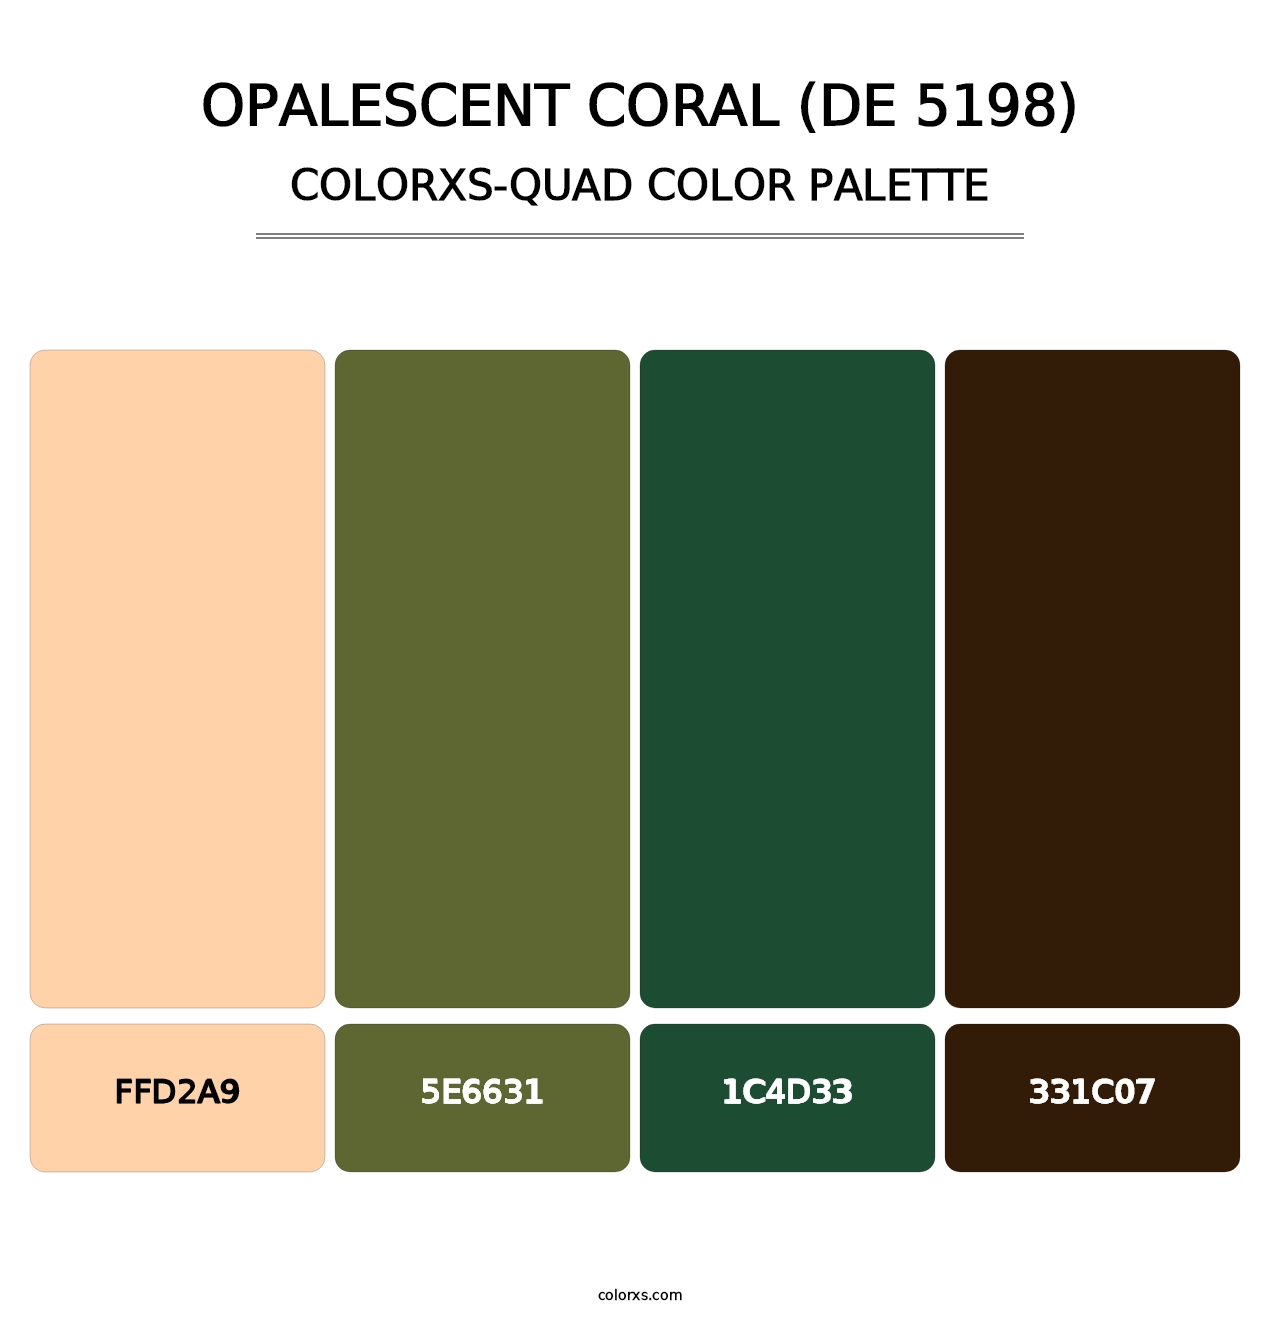 Opalescent Coral (DE 5198) - Colorxs Quad Palette